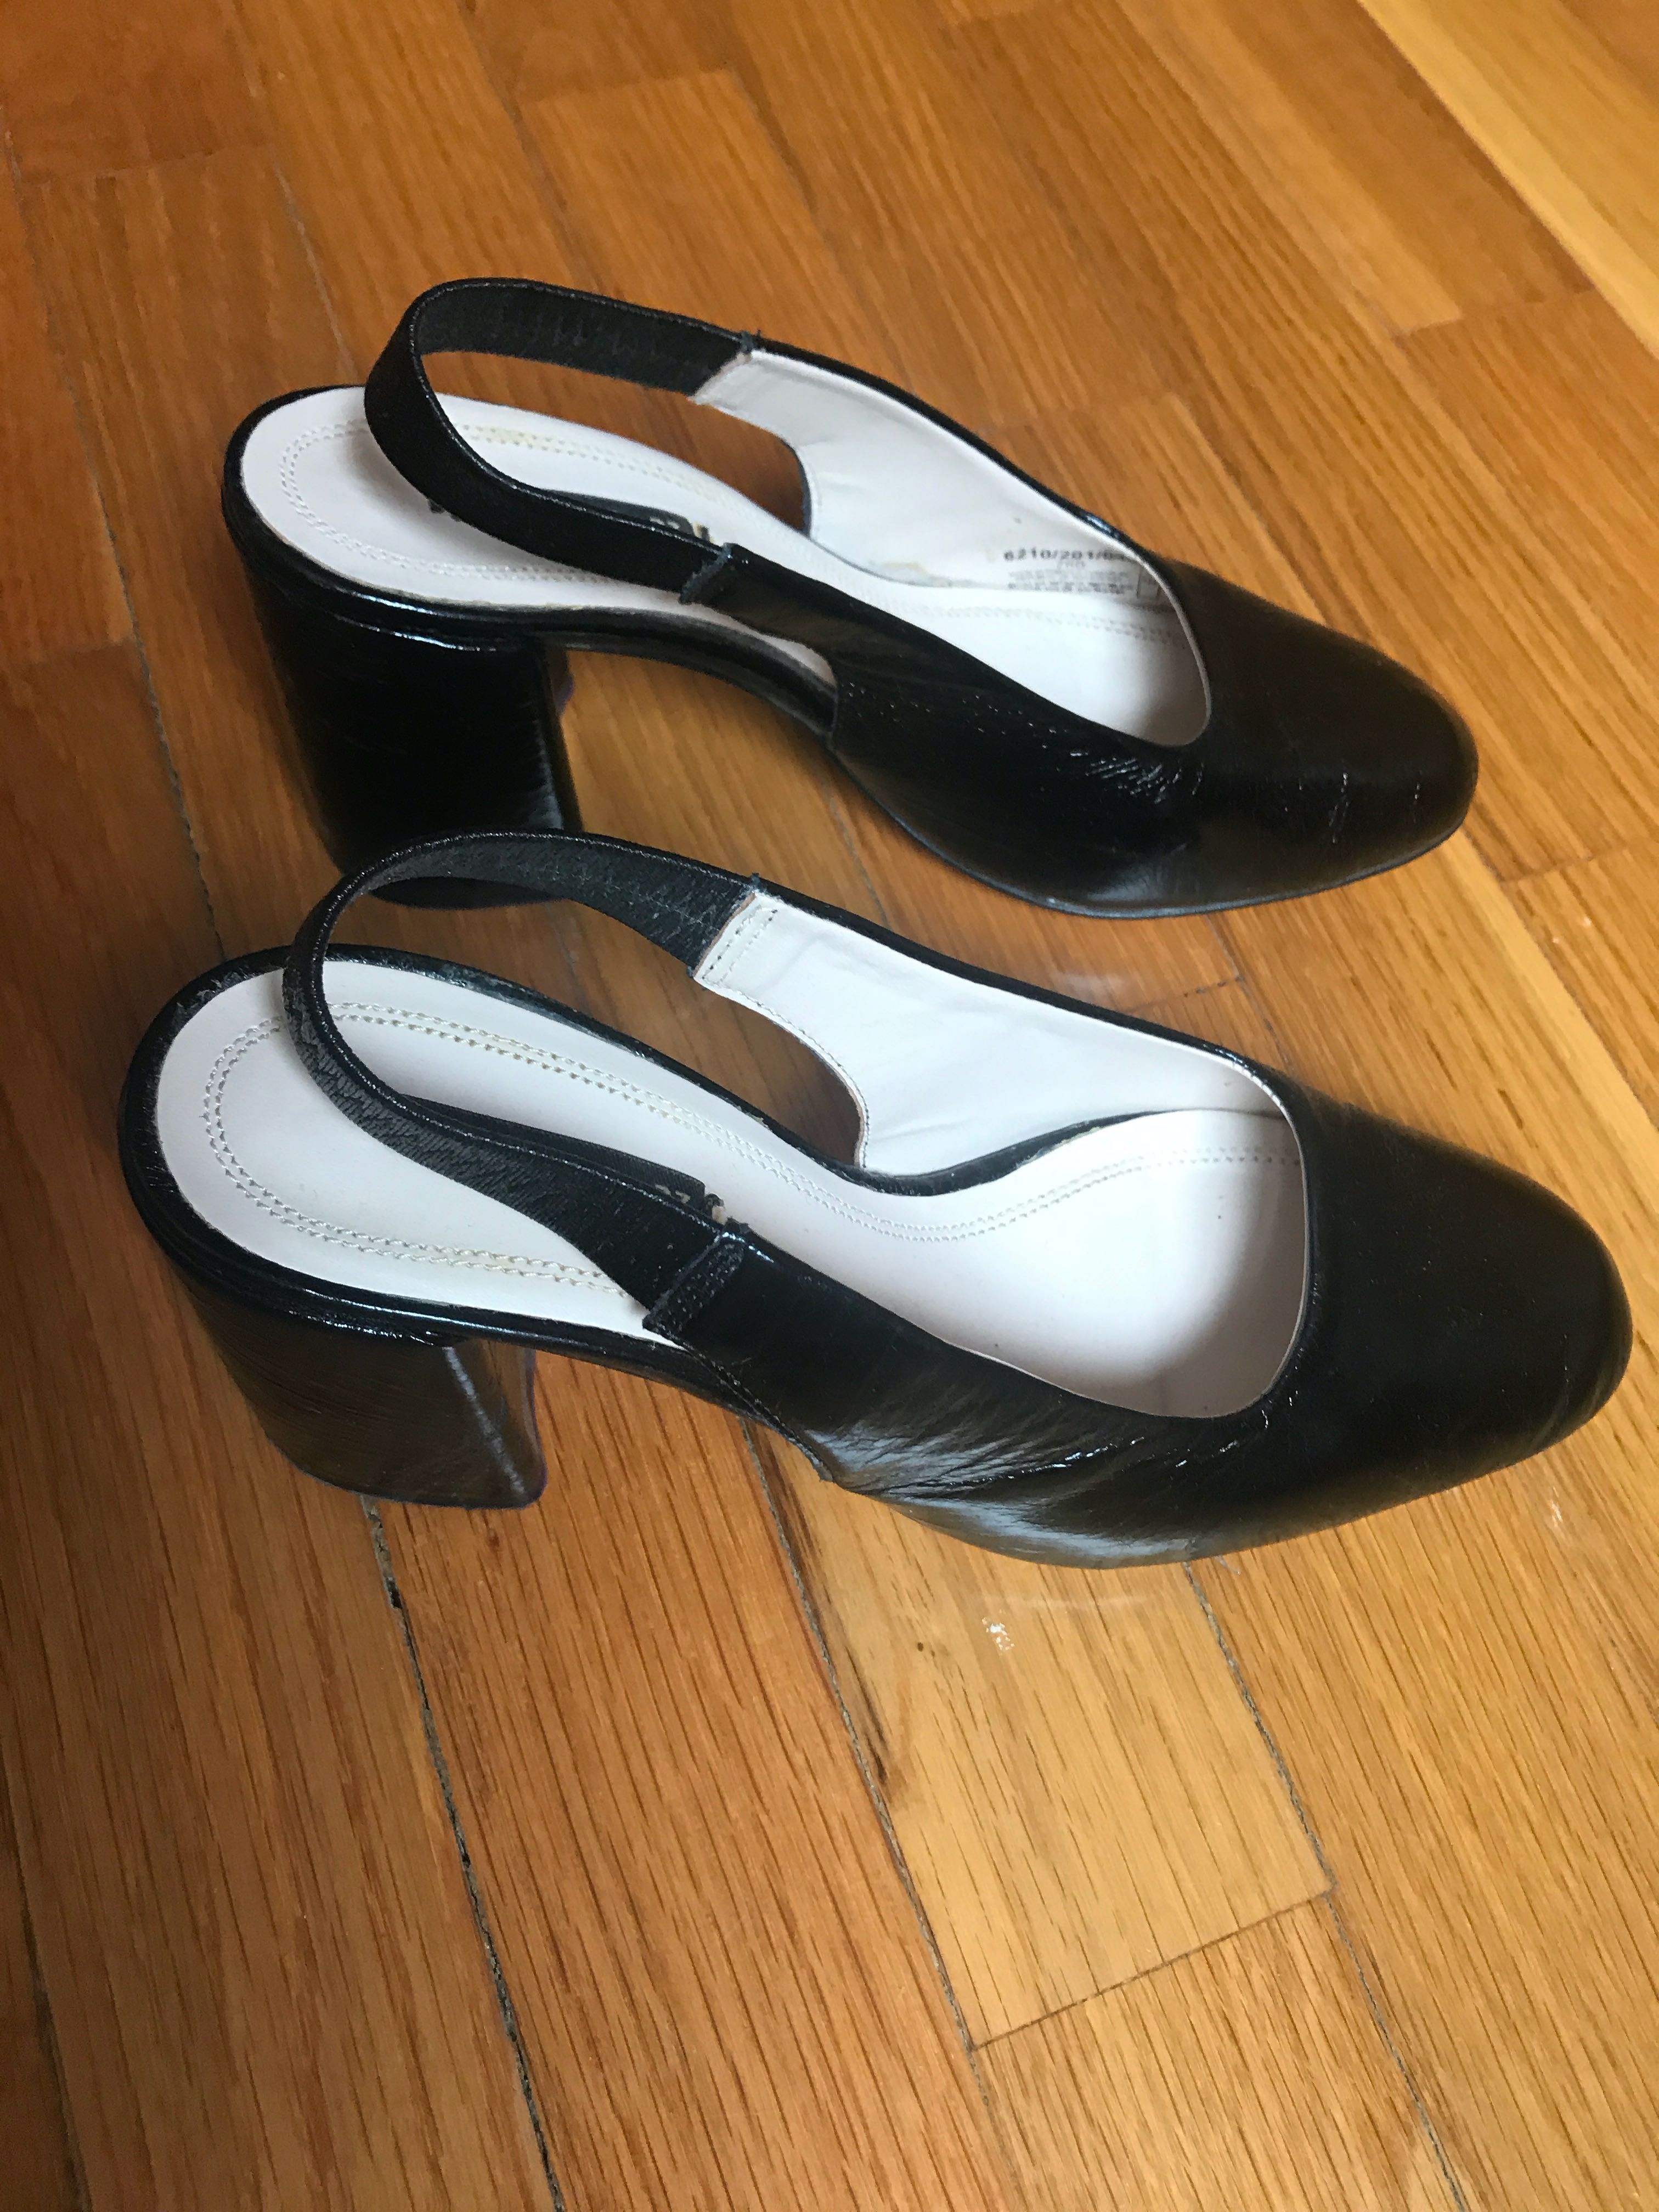 Sandálias/sapatos pretos pele Zara t. 37 como novos